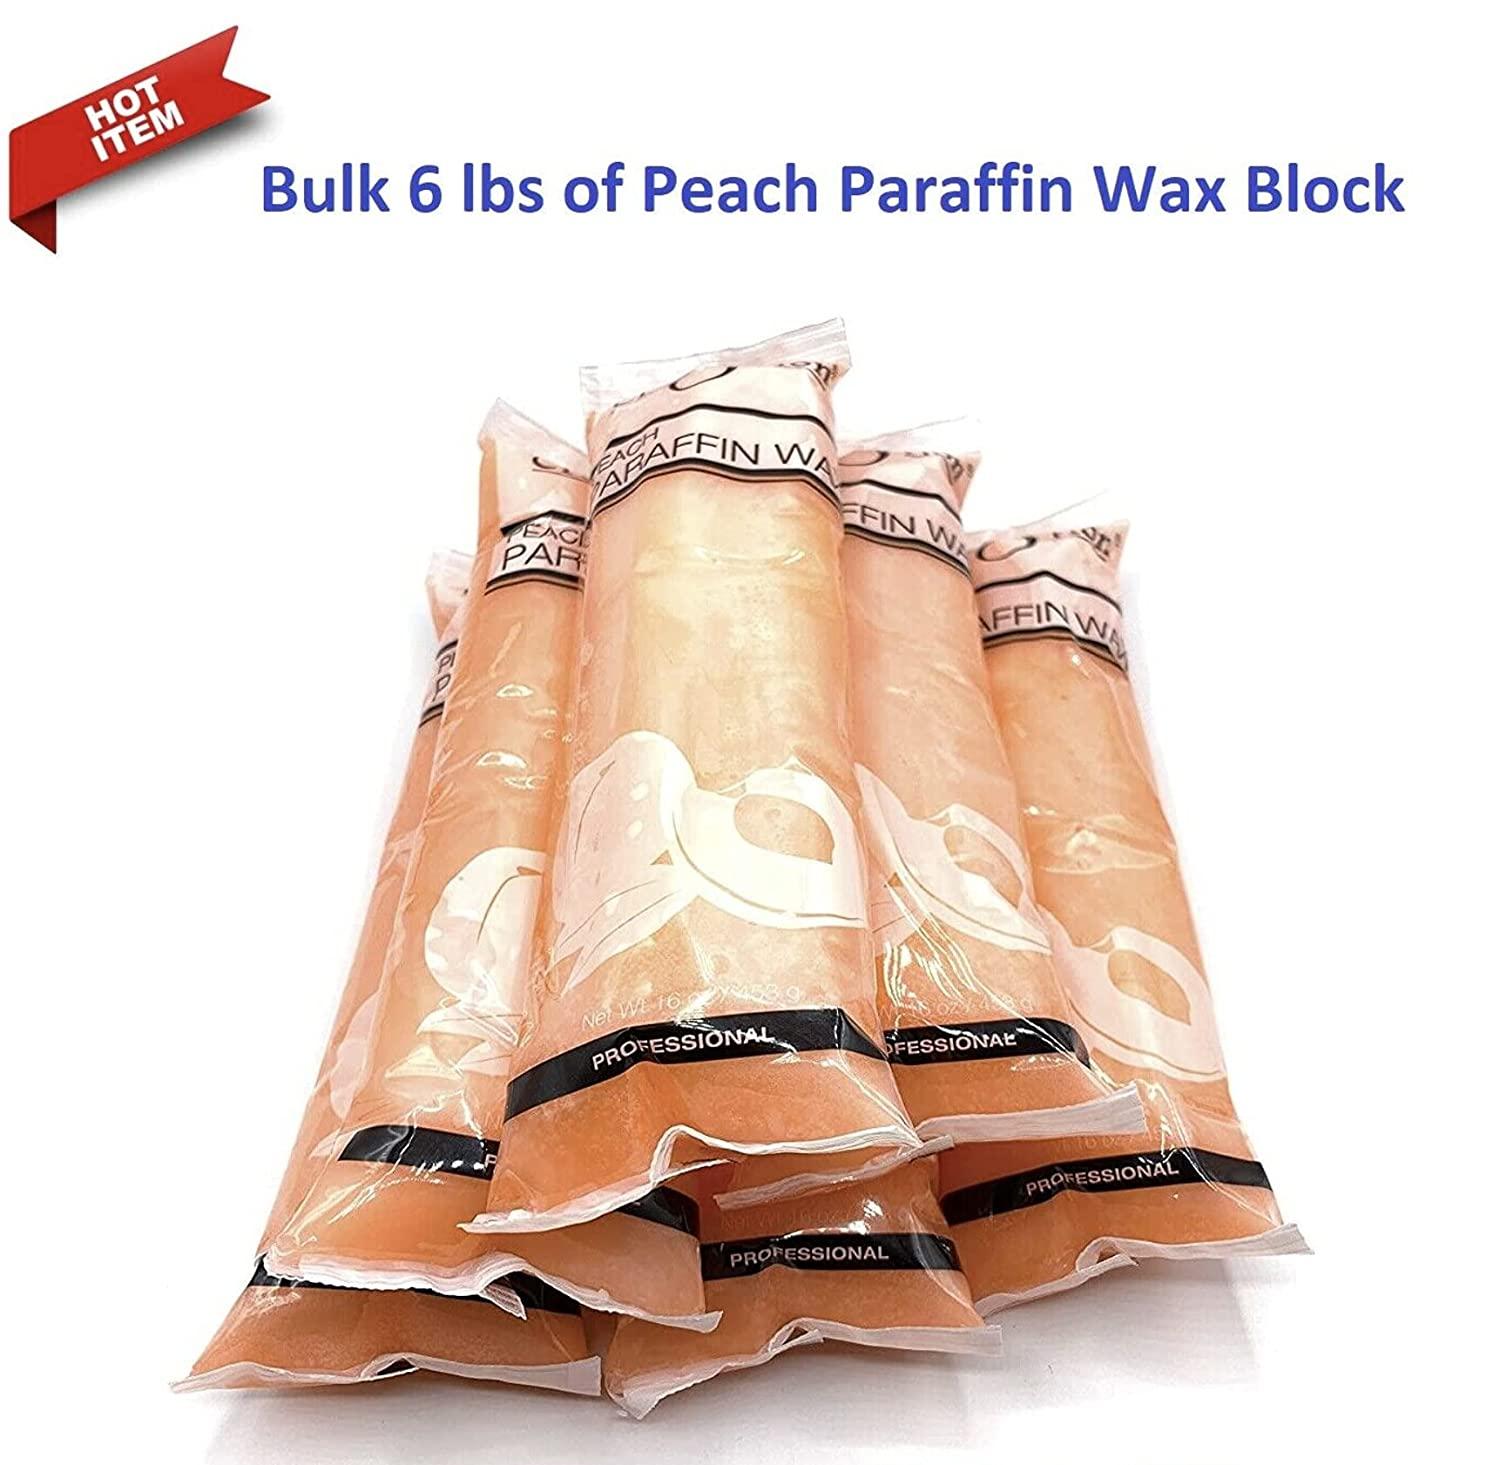 Paraffin Wax Refills by Creation: Bulk 6 lbs of Peach Paraffin Wax